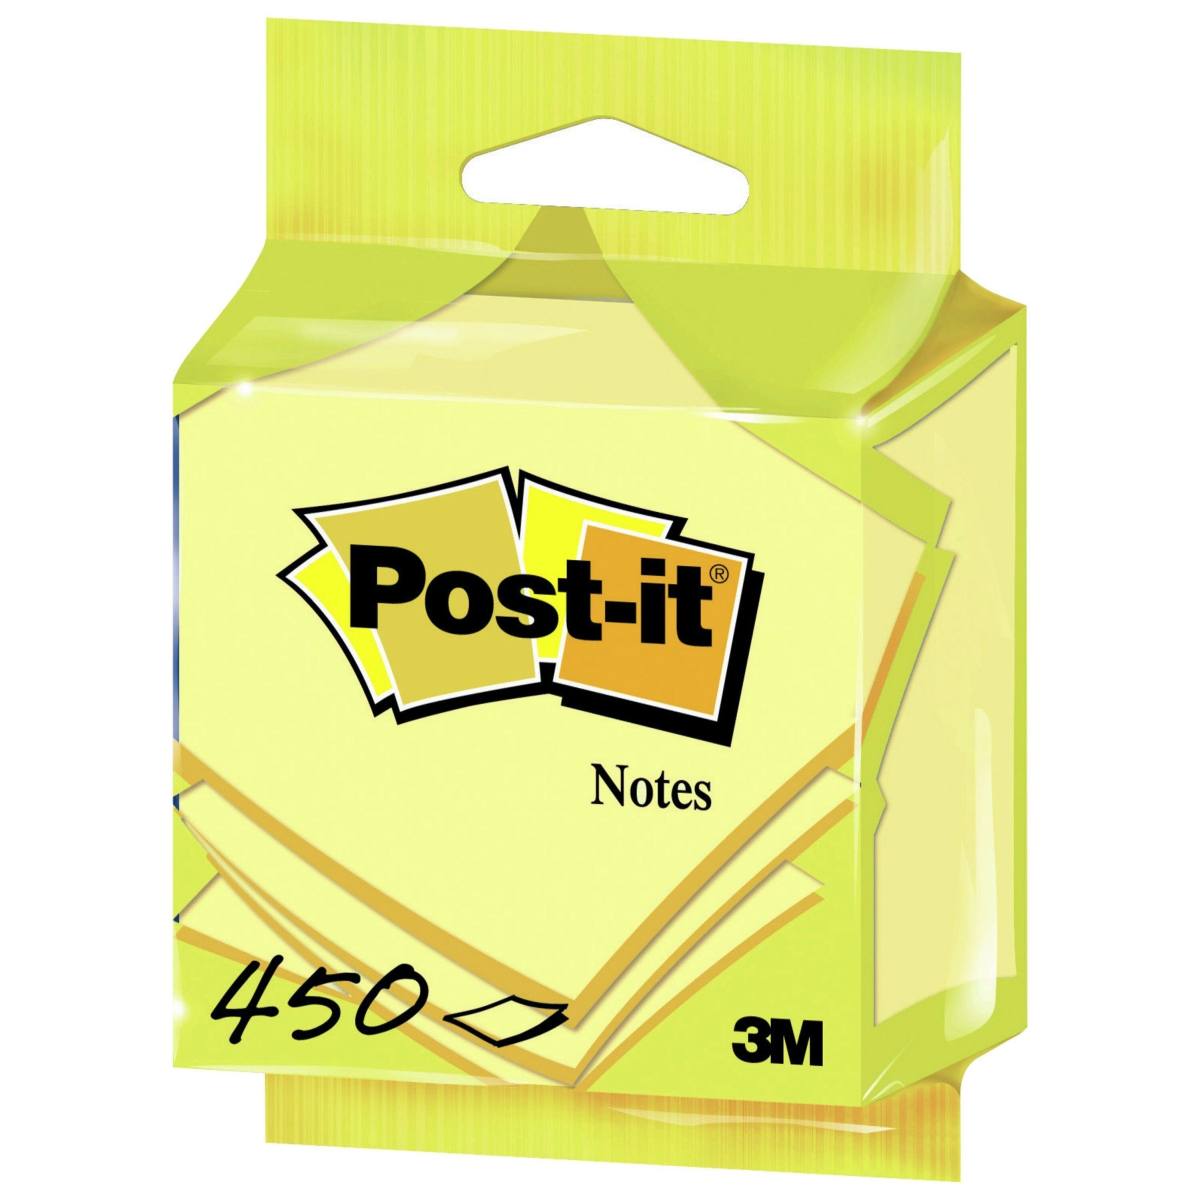 3M Post-it Kuutio 5426GB, 76 mm x 76 mm, keltainen, 1 kuutio, 450 arkkia